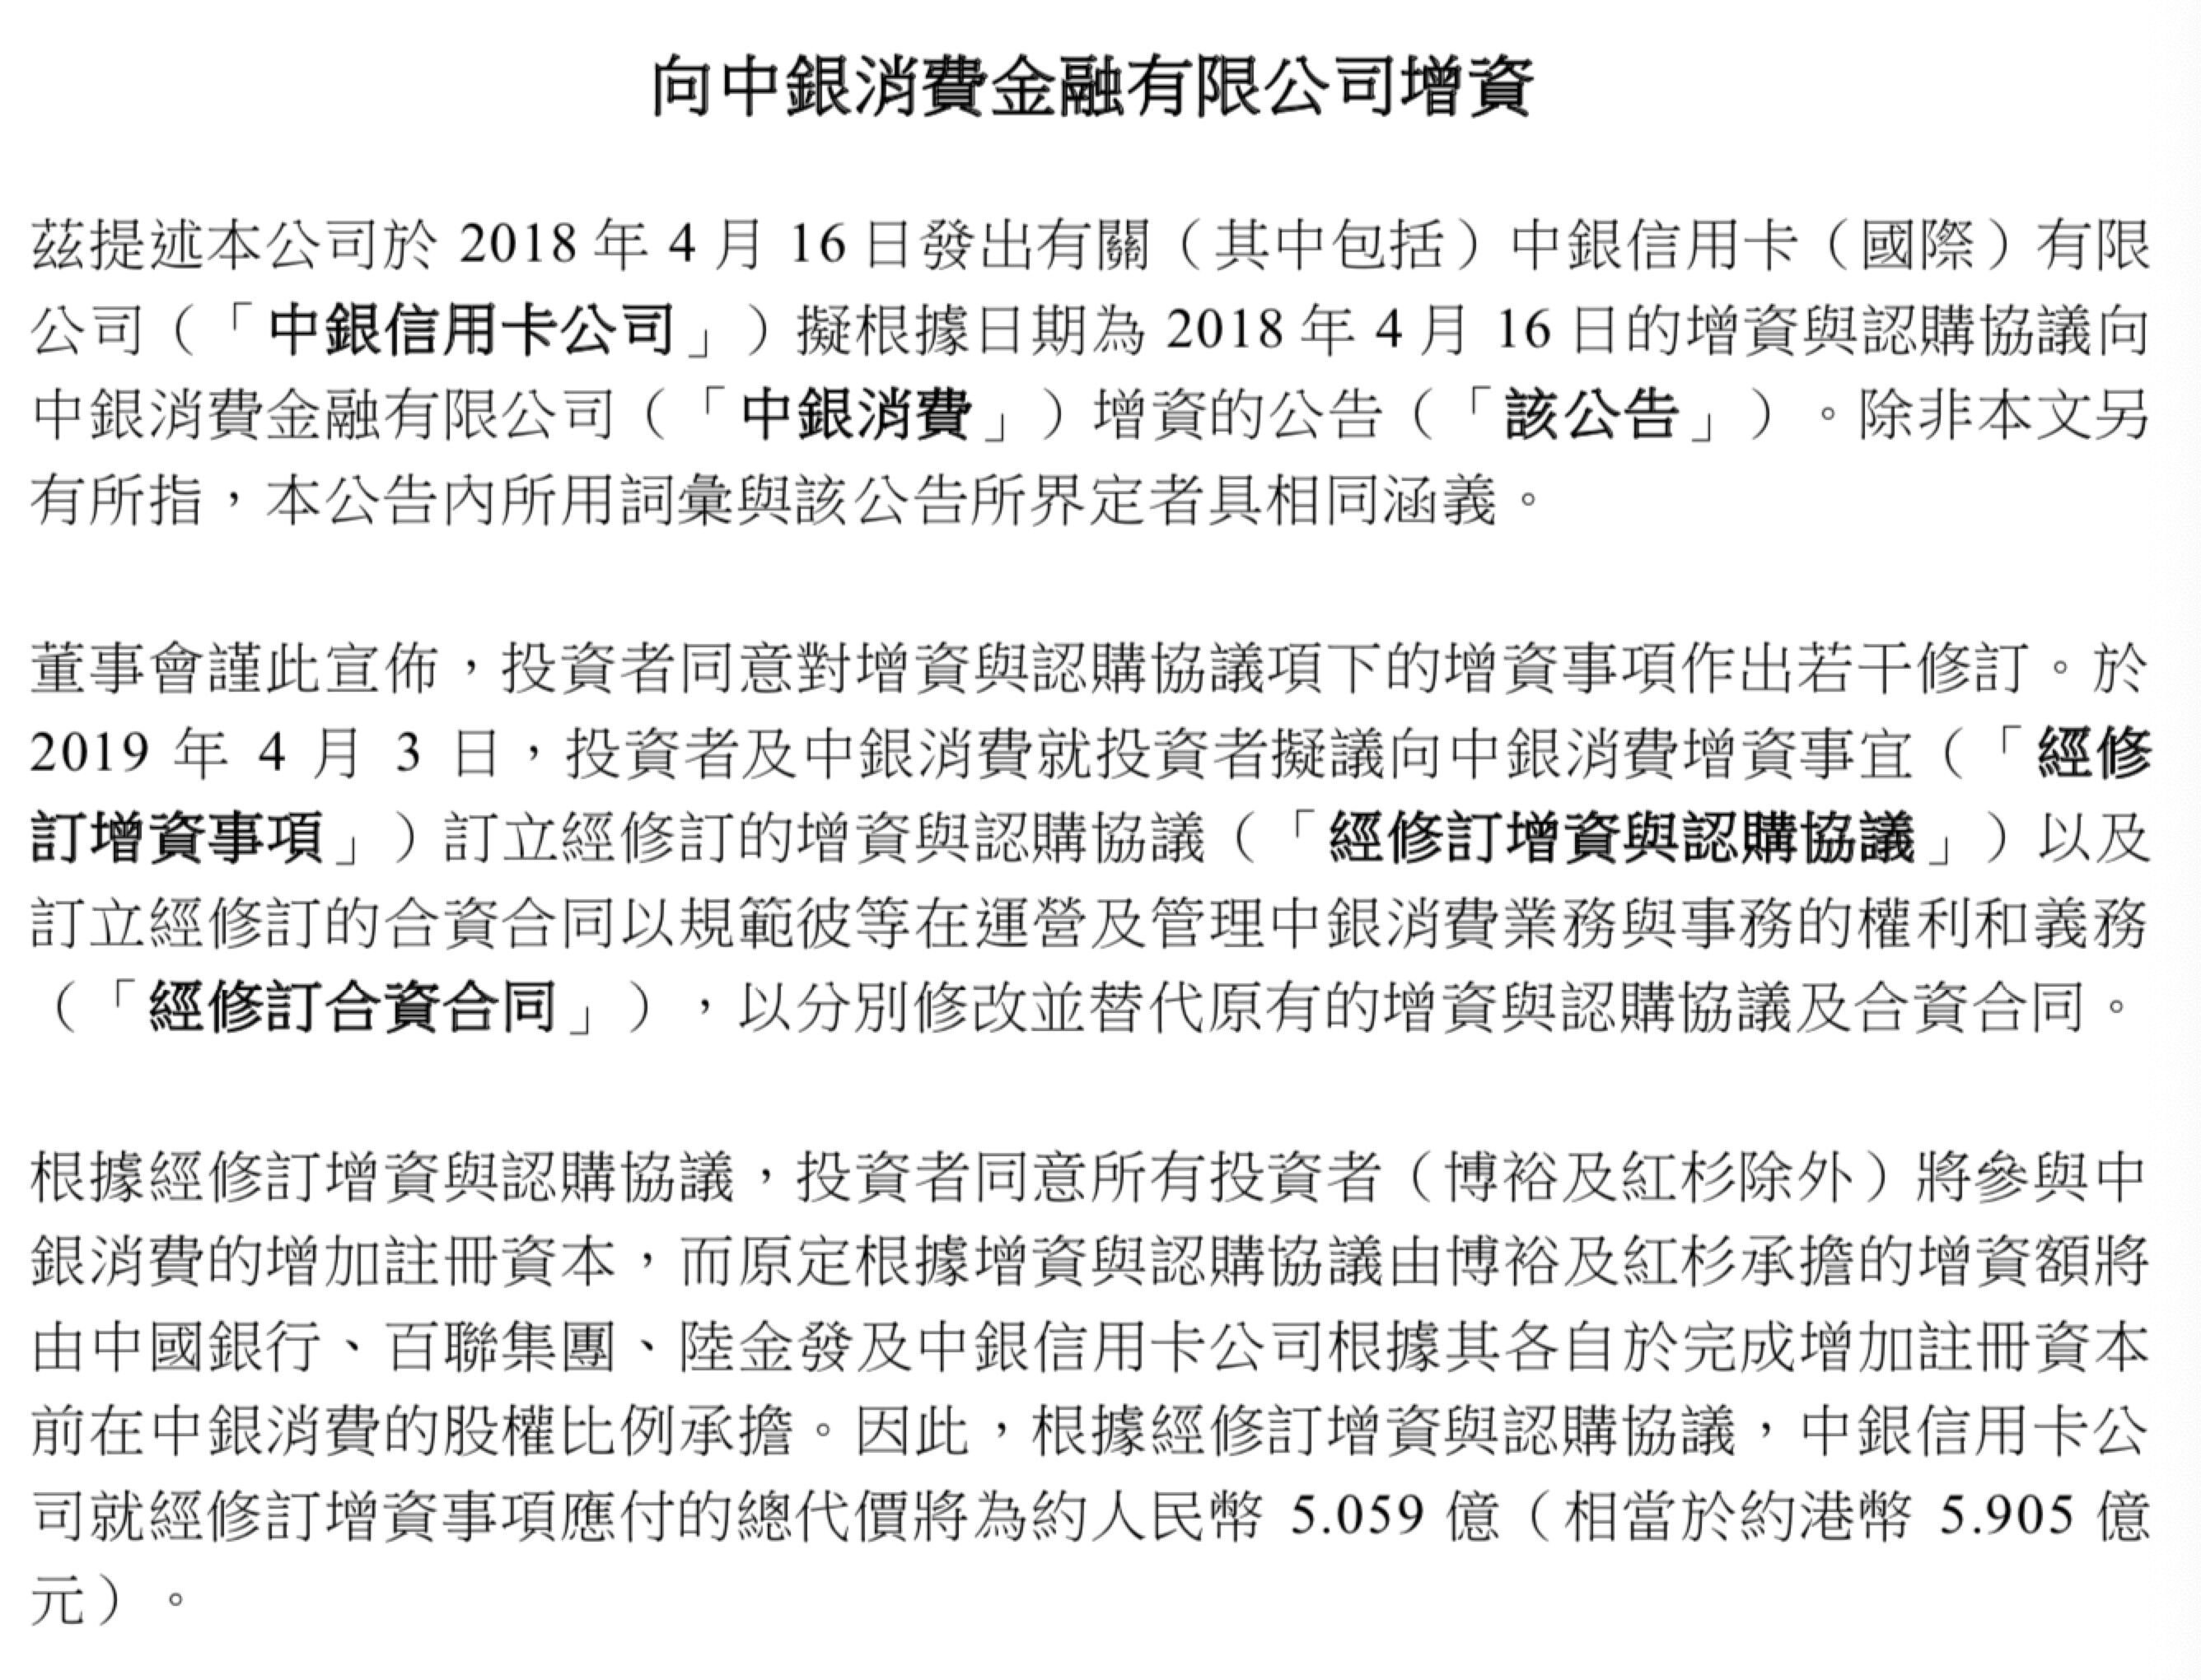 中银香港(02388)向中银消费增资额扩至5.06亿元 持股将至13.23%